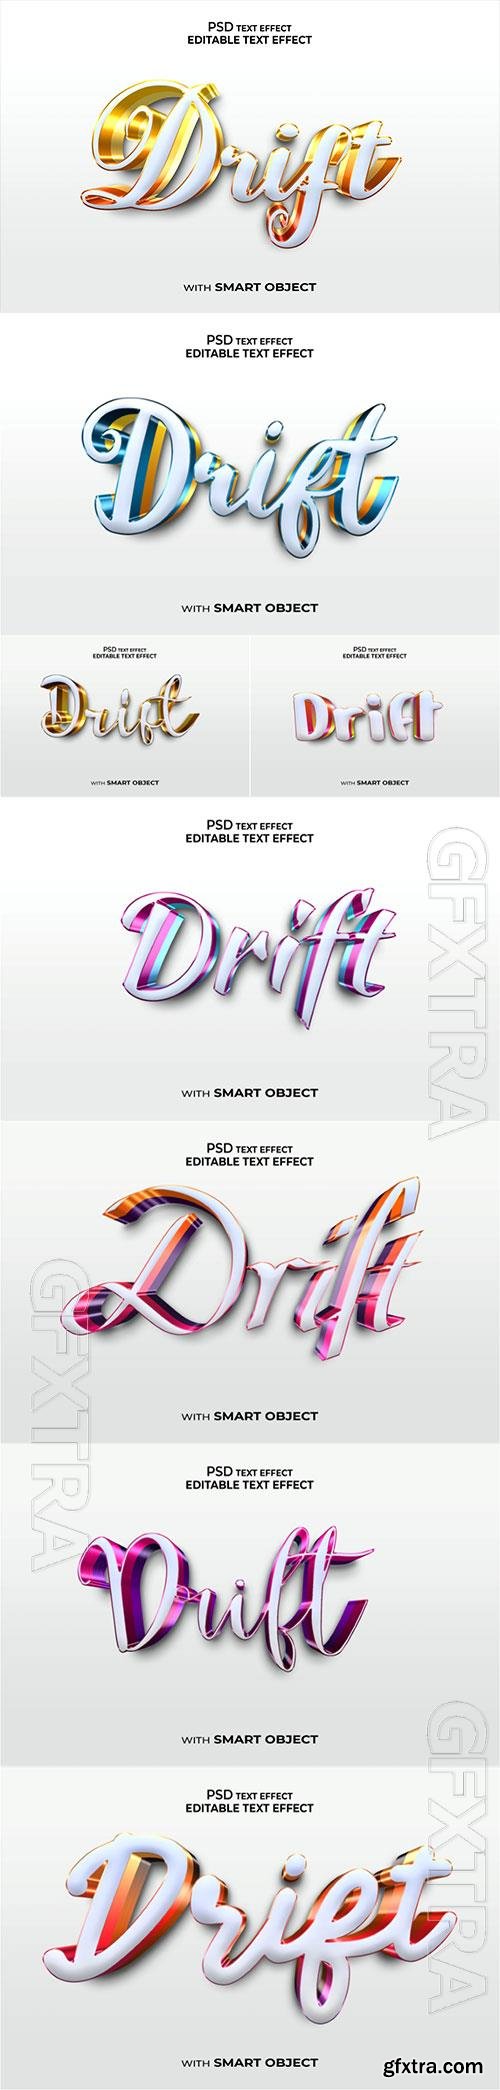 Drift Psd text effect set vol 556